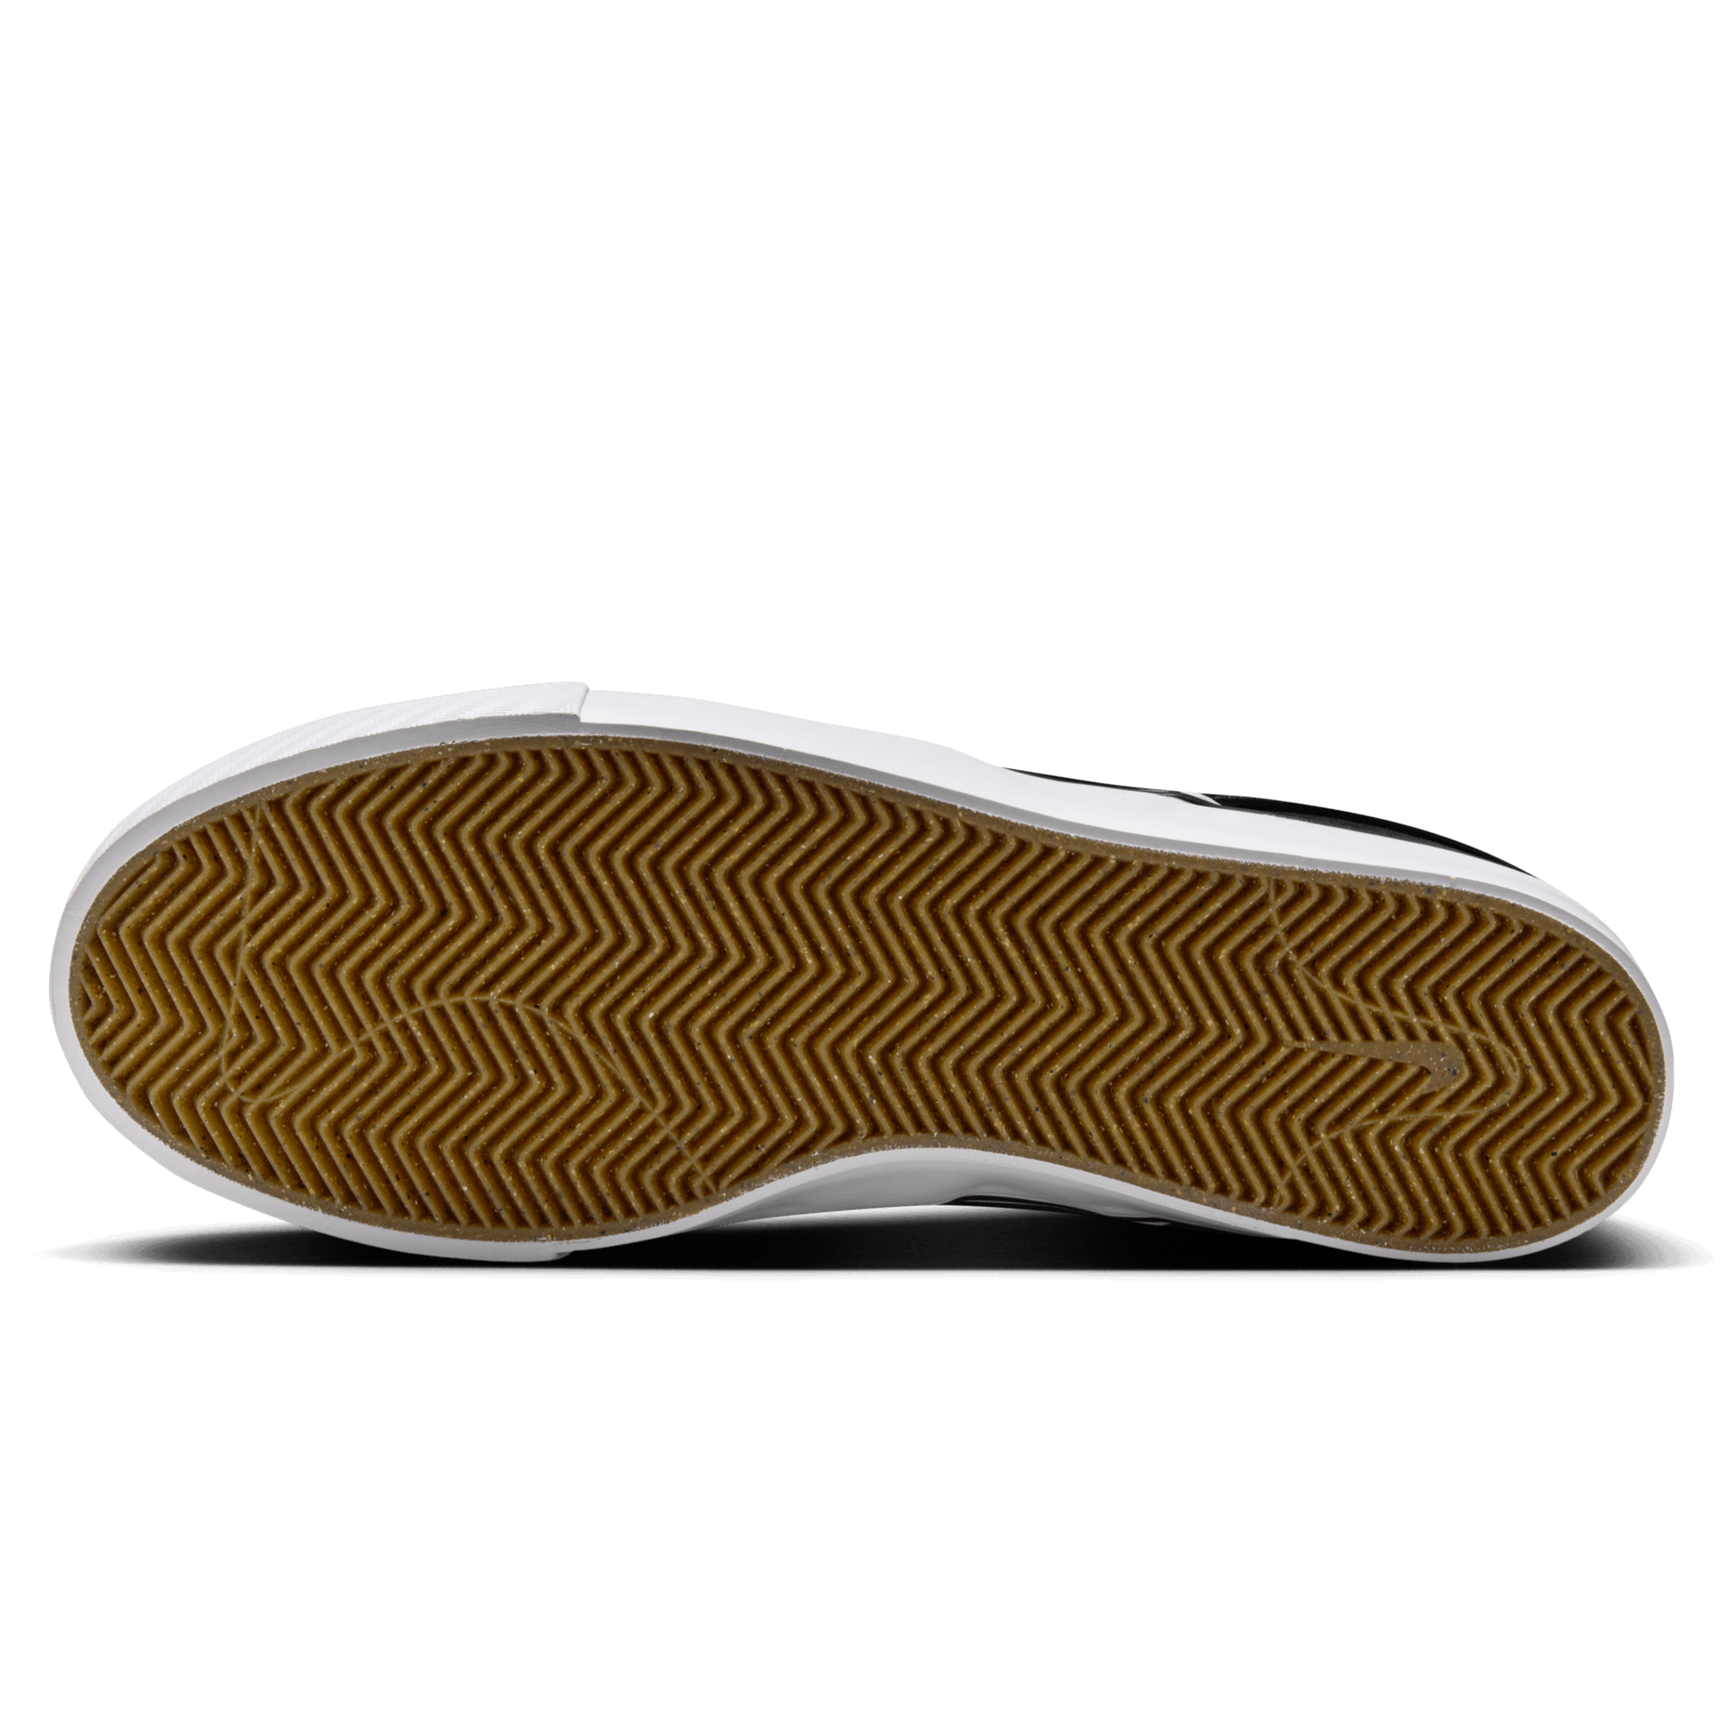 Black/White Janoski+ Nike SB Slip On Shoe Bottom